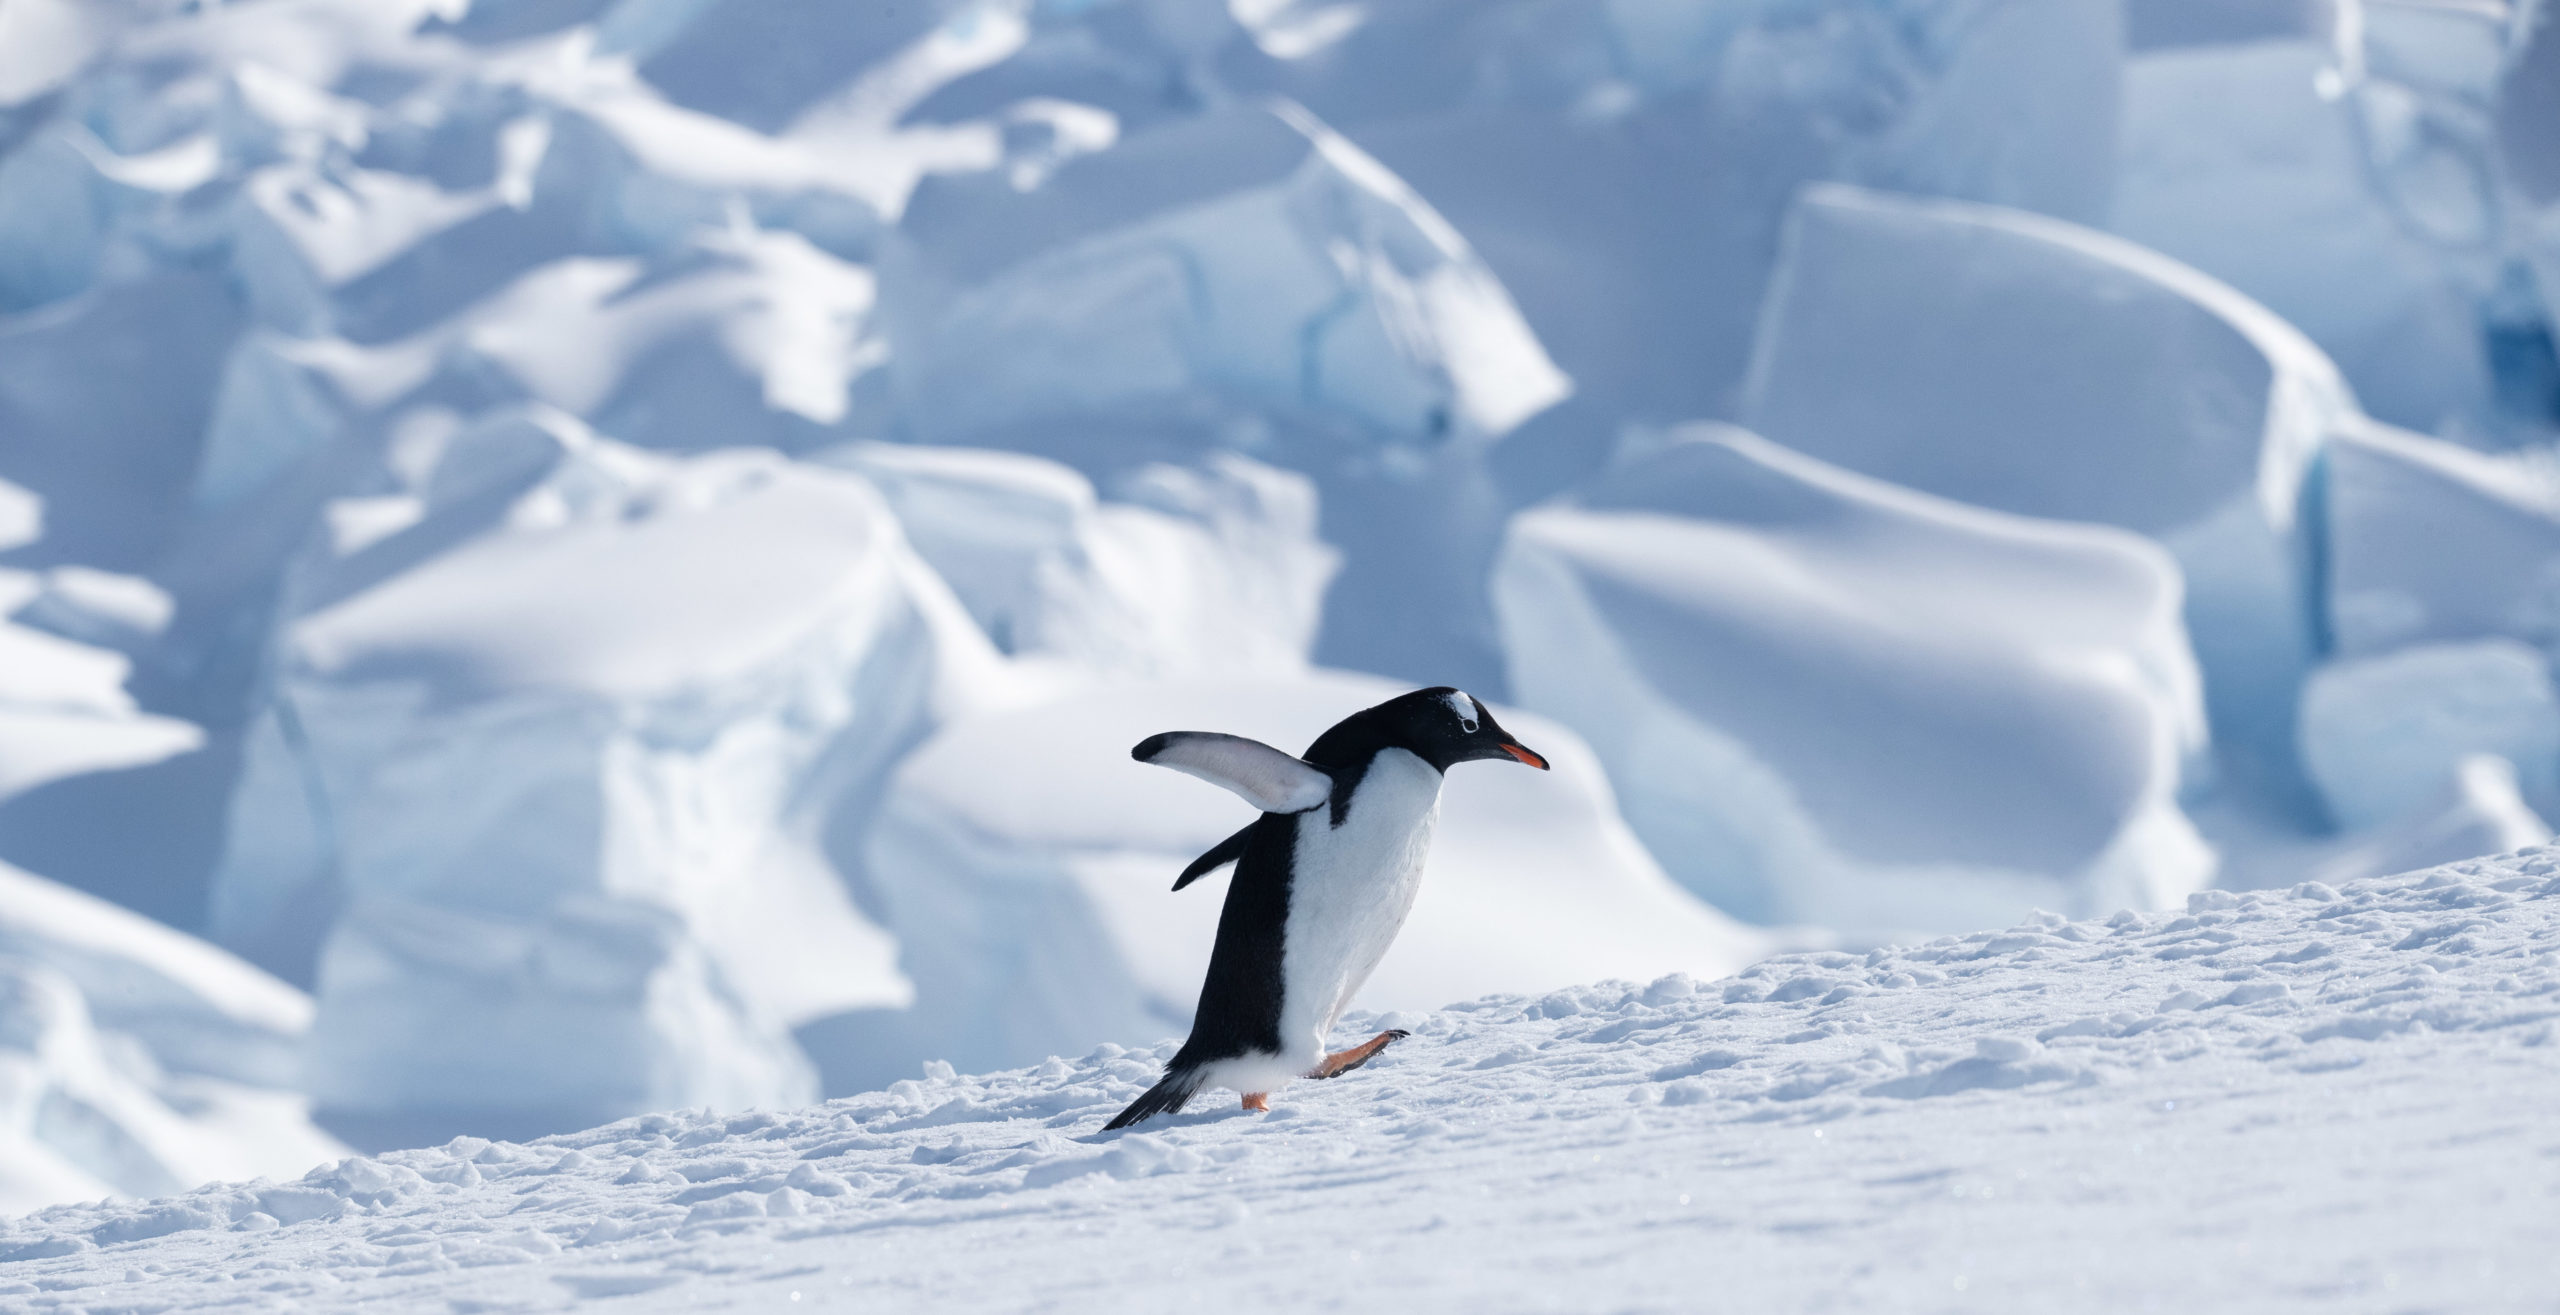 A gentoo penguin walks in front of a glacier in Neko Harbor, Antarctica